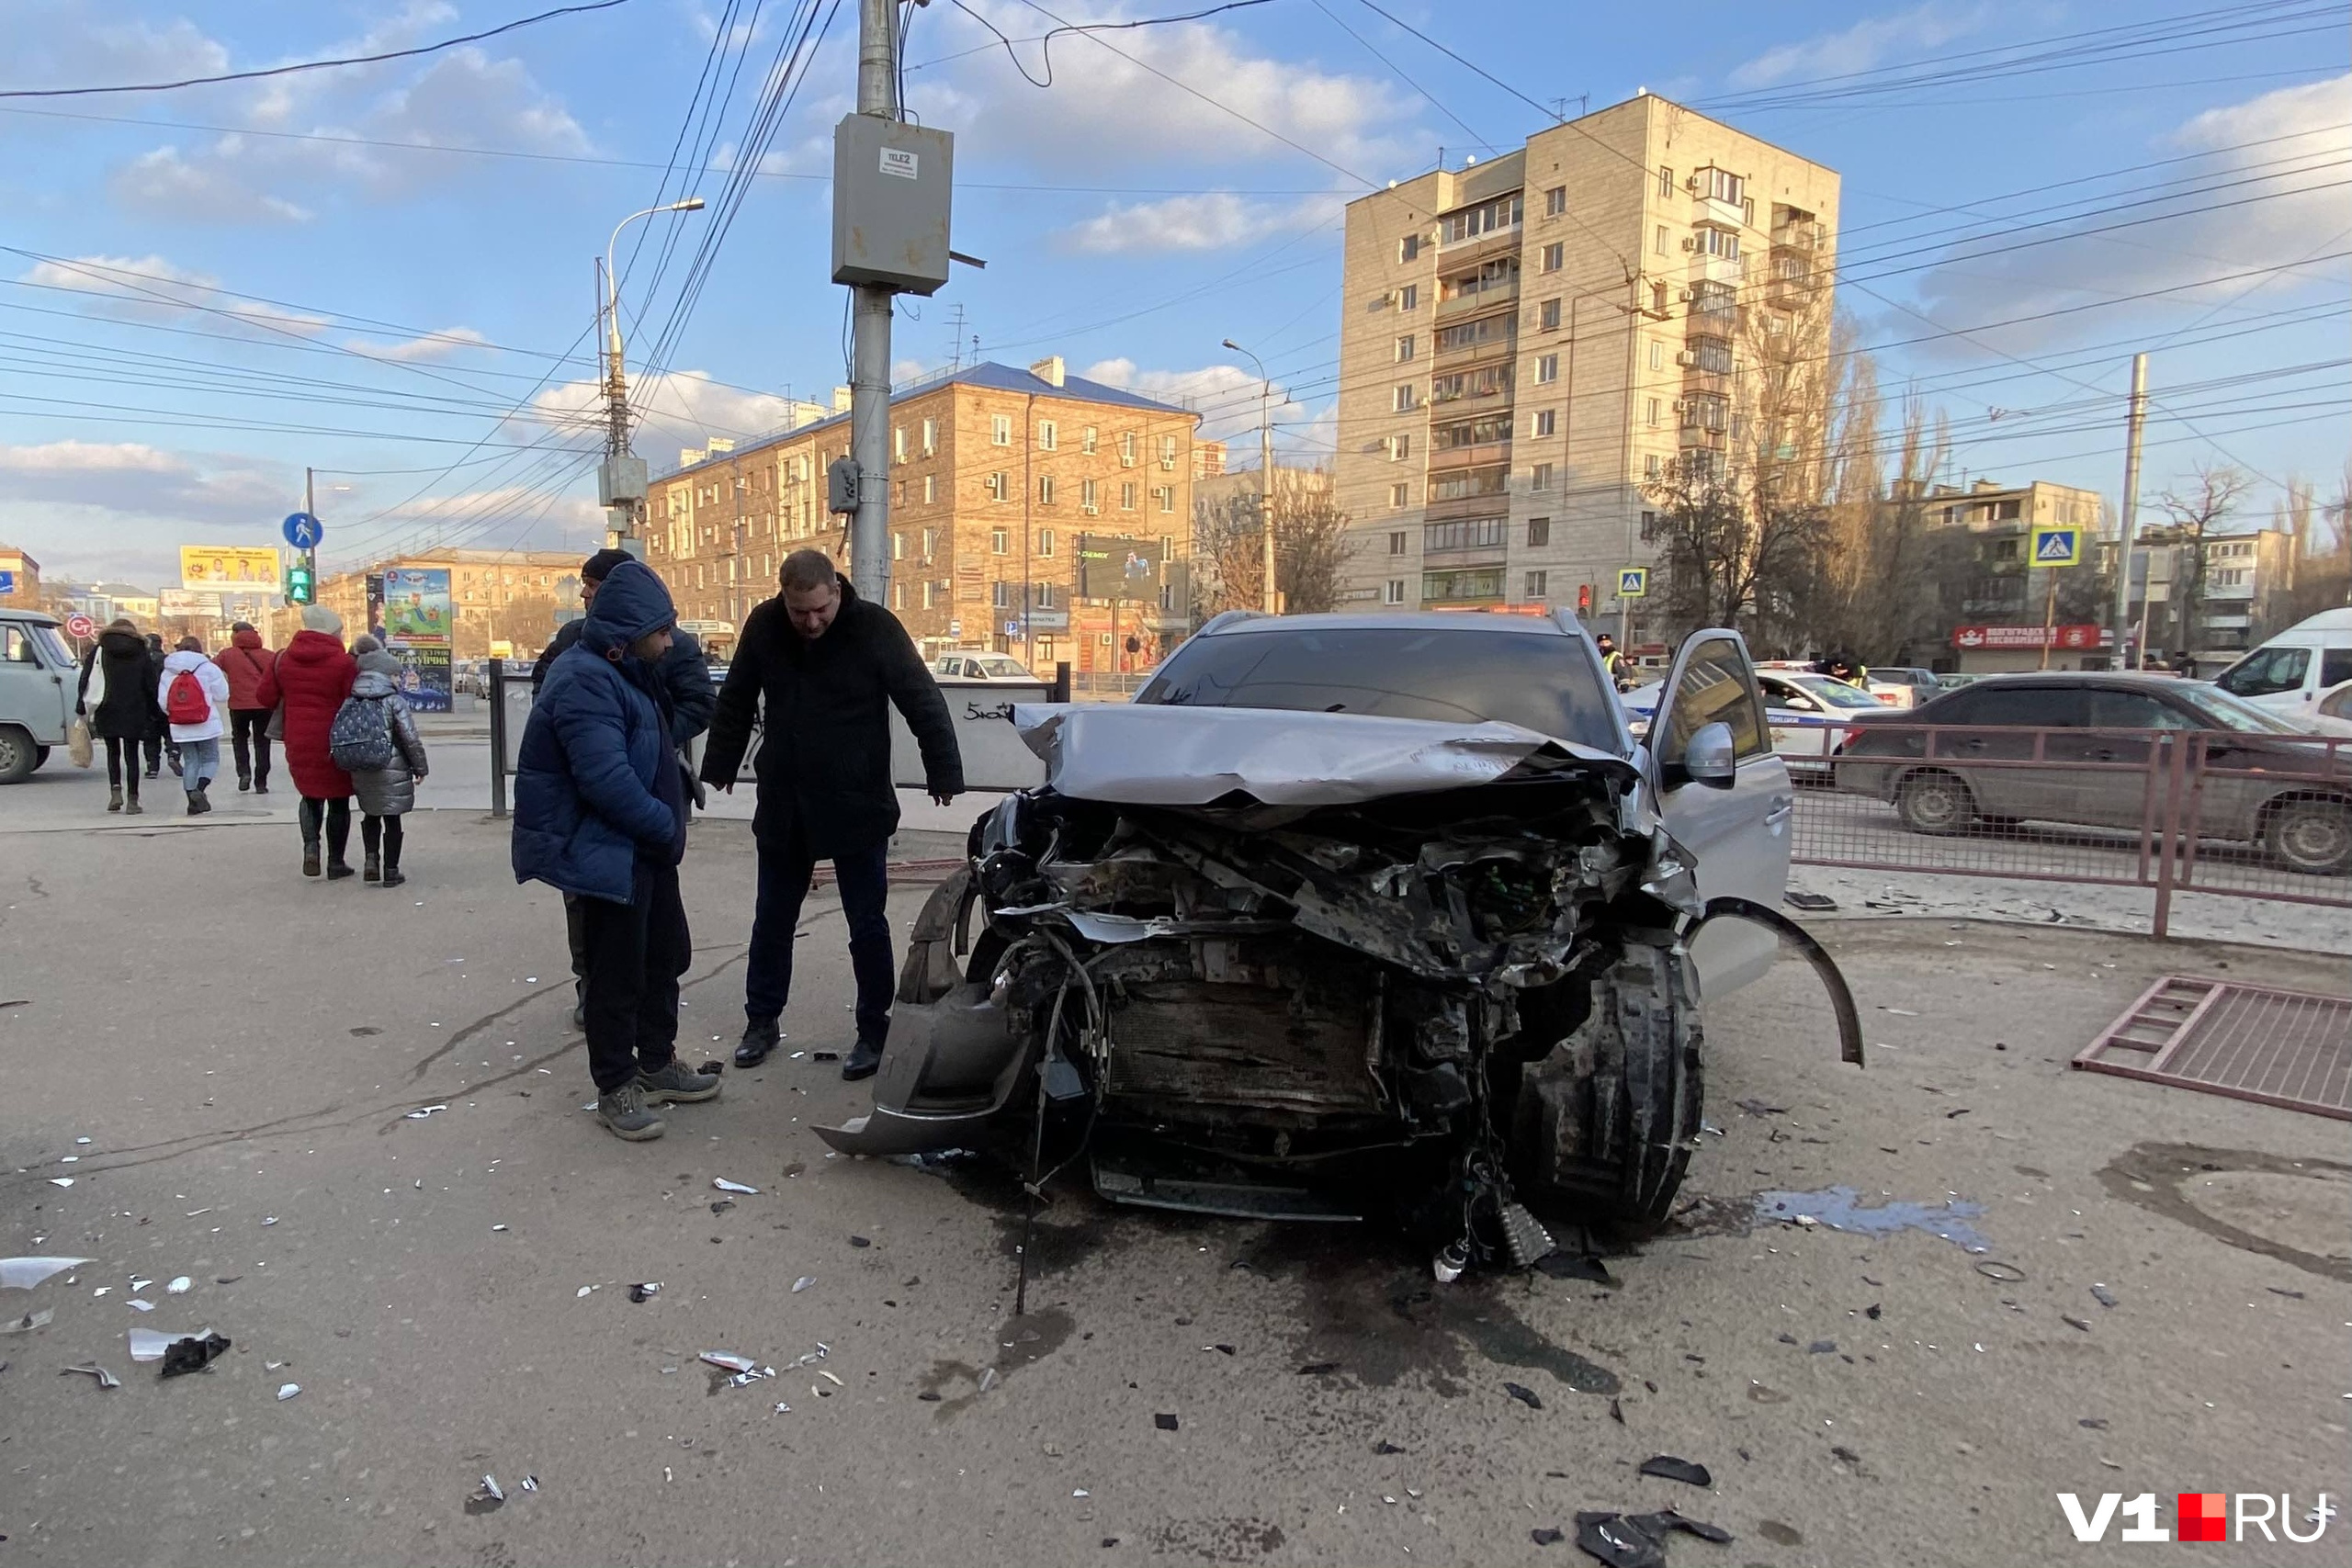 Серьёзная авария в Дагестане. Срочные новости про